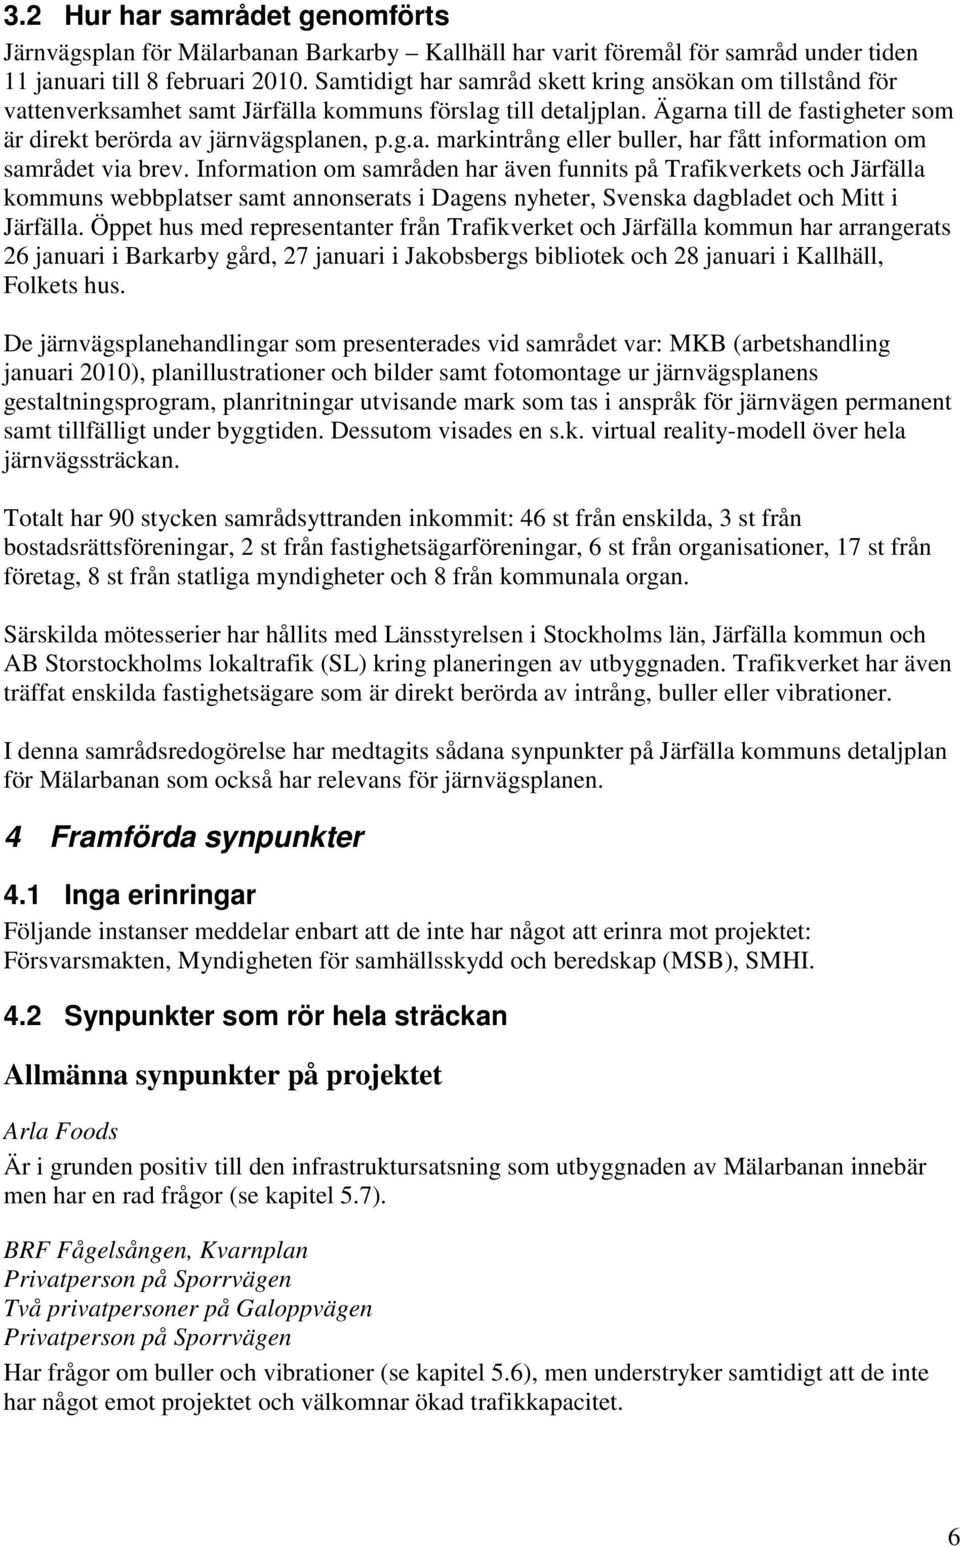 Information om samråden har även funnits på Trafikverkets och Järfälla kommuns webbplatser samt annonserats i Dagens nyheter, Svenska dagbladet och Mitt i Järfälla.